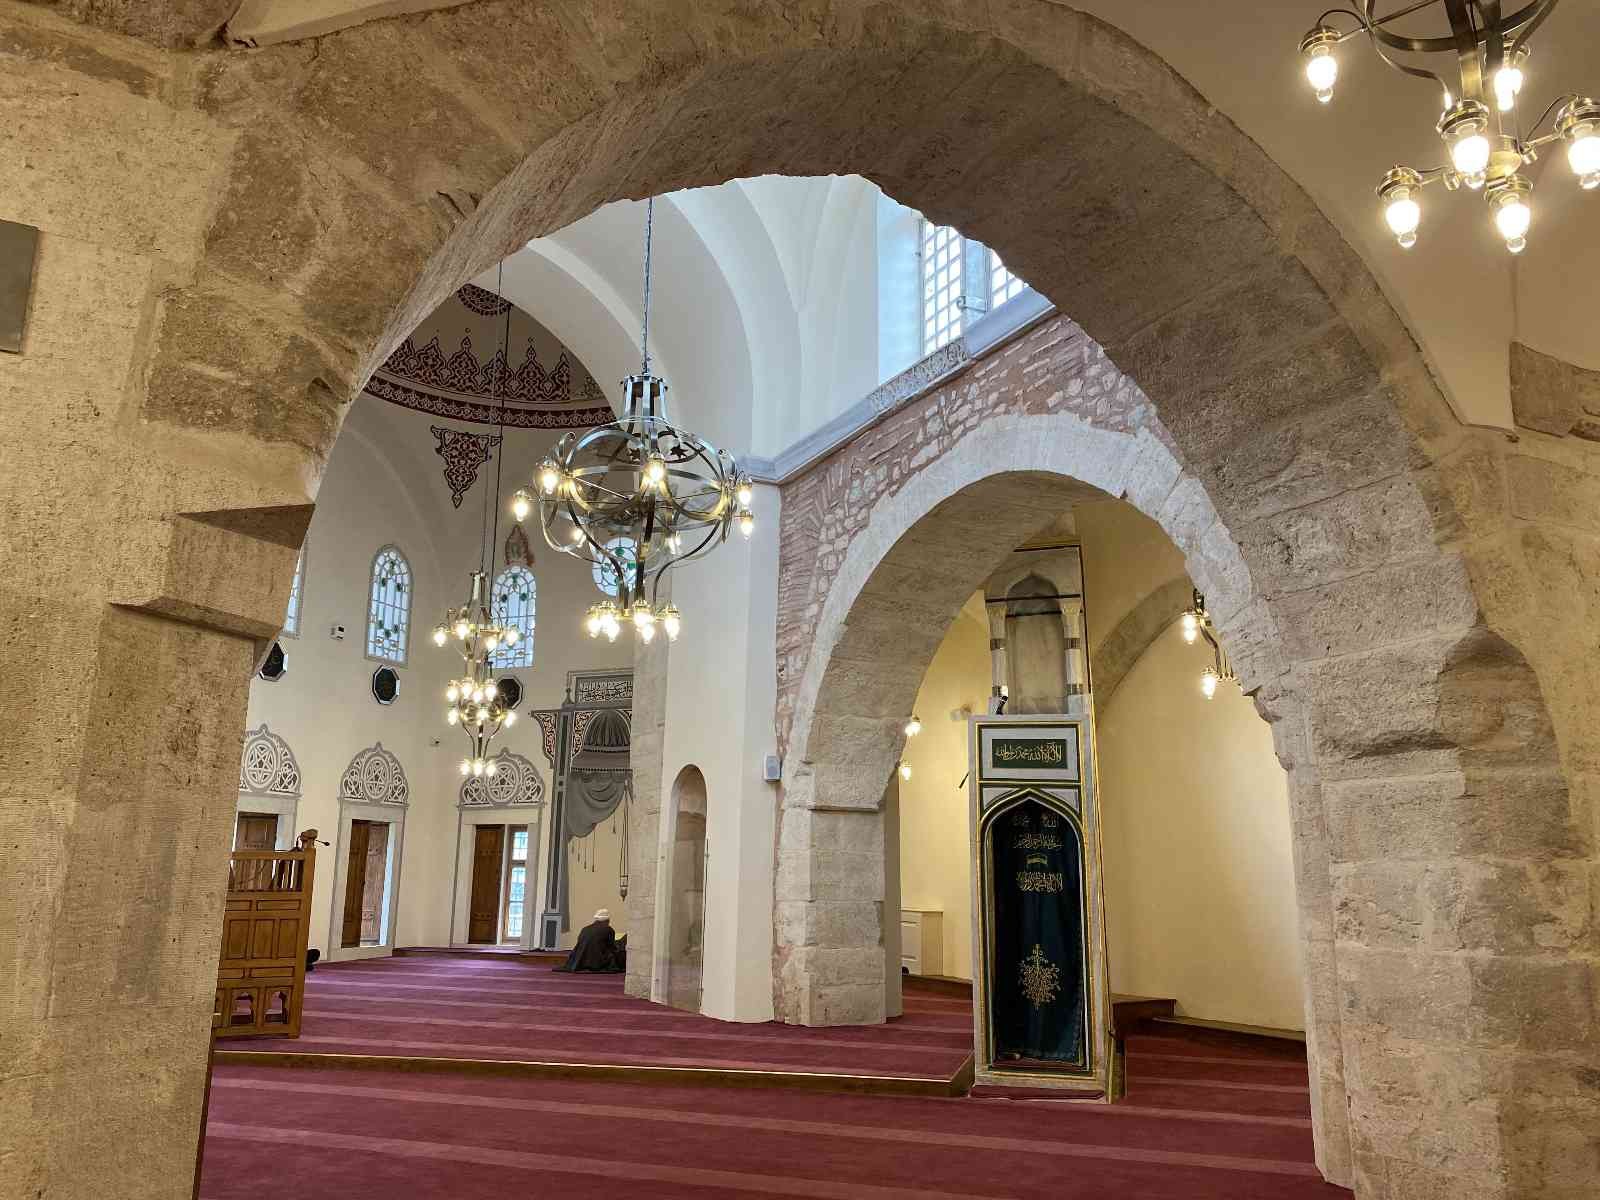 Restorasyonu tamamlanan Fethiye Camii yeniden ibadete açıldı #istanbul